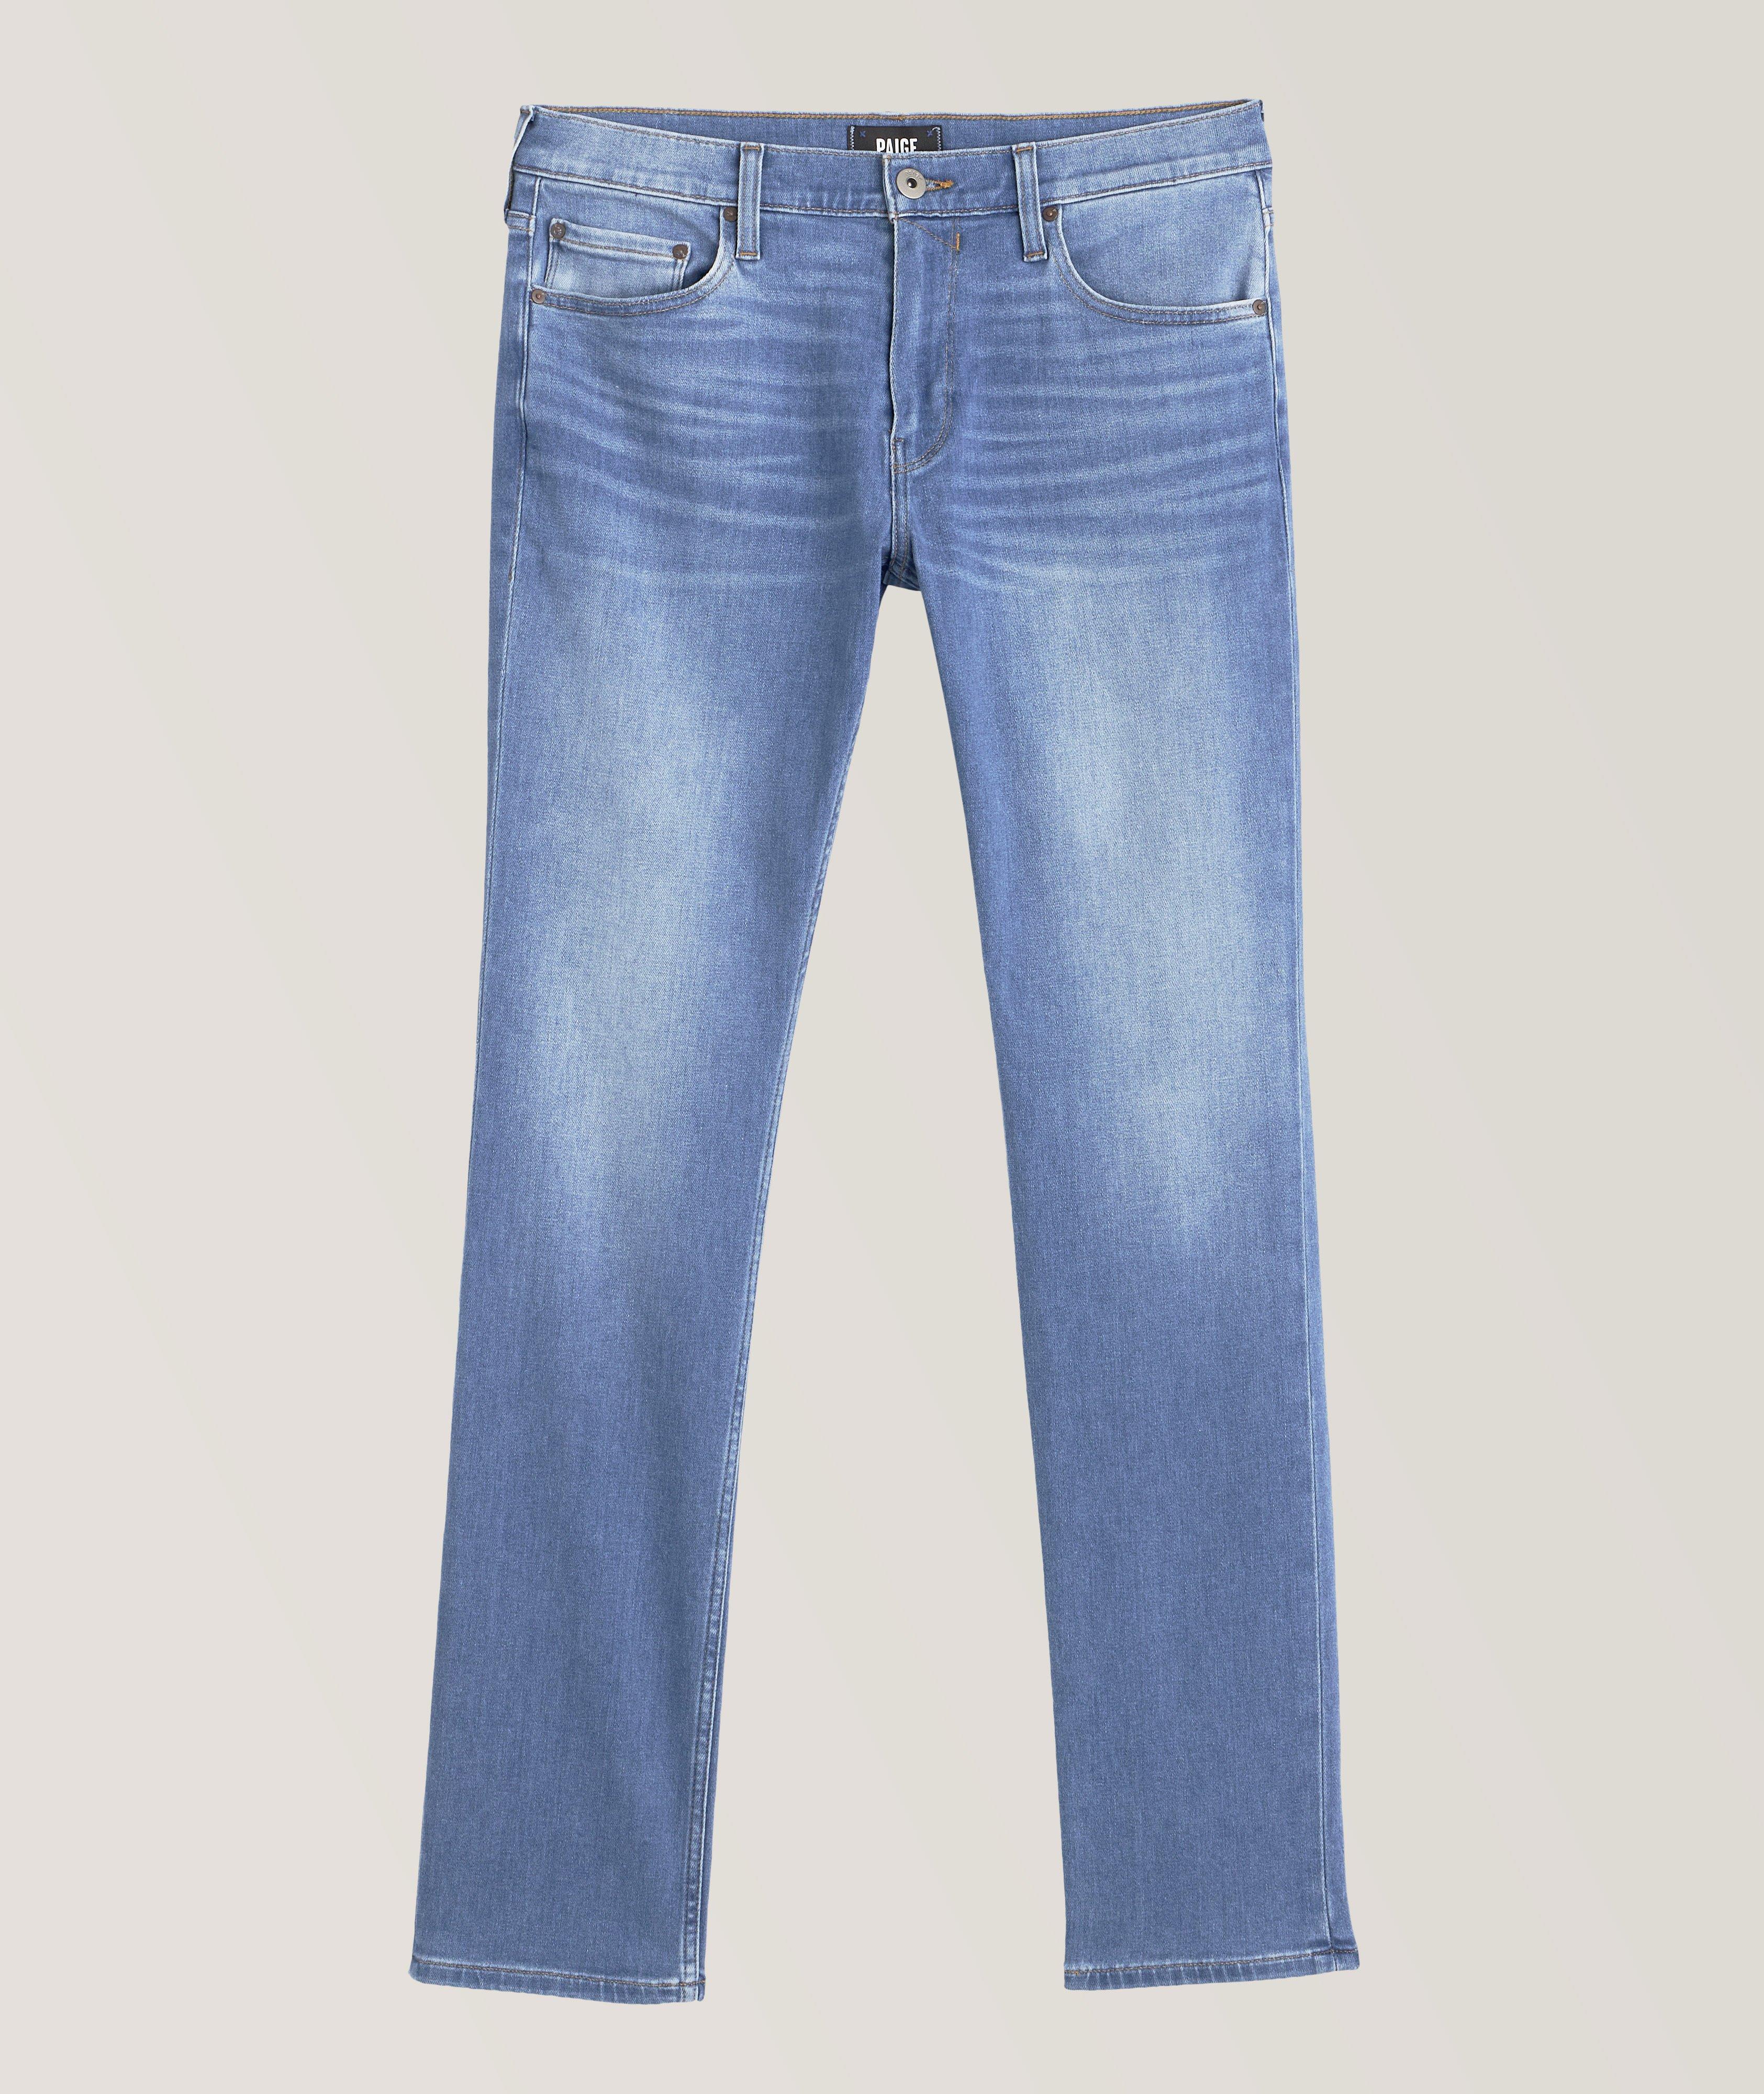 Federal Slim-Straight Transcend Vintage Jeans image 0